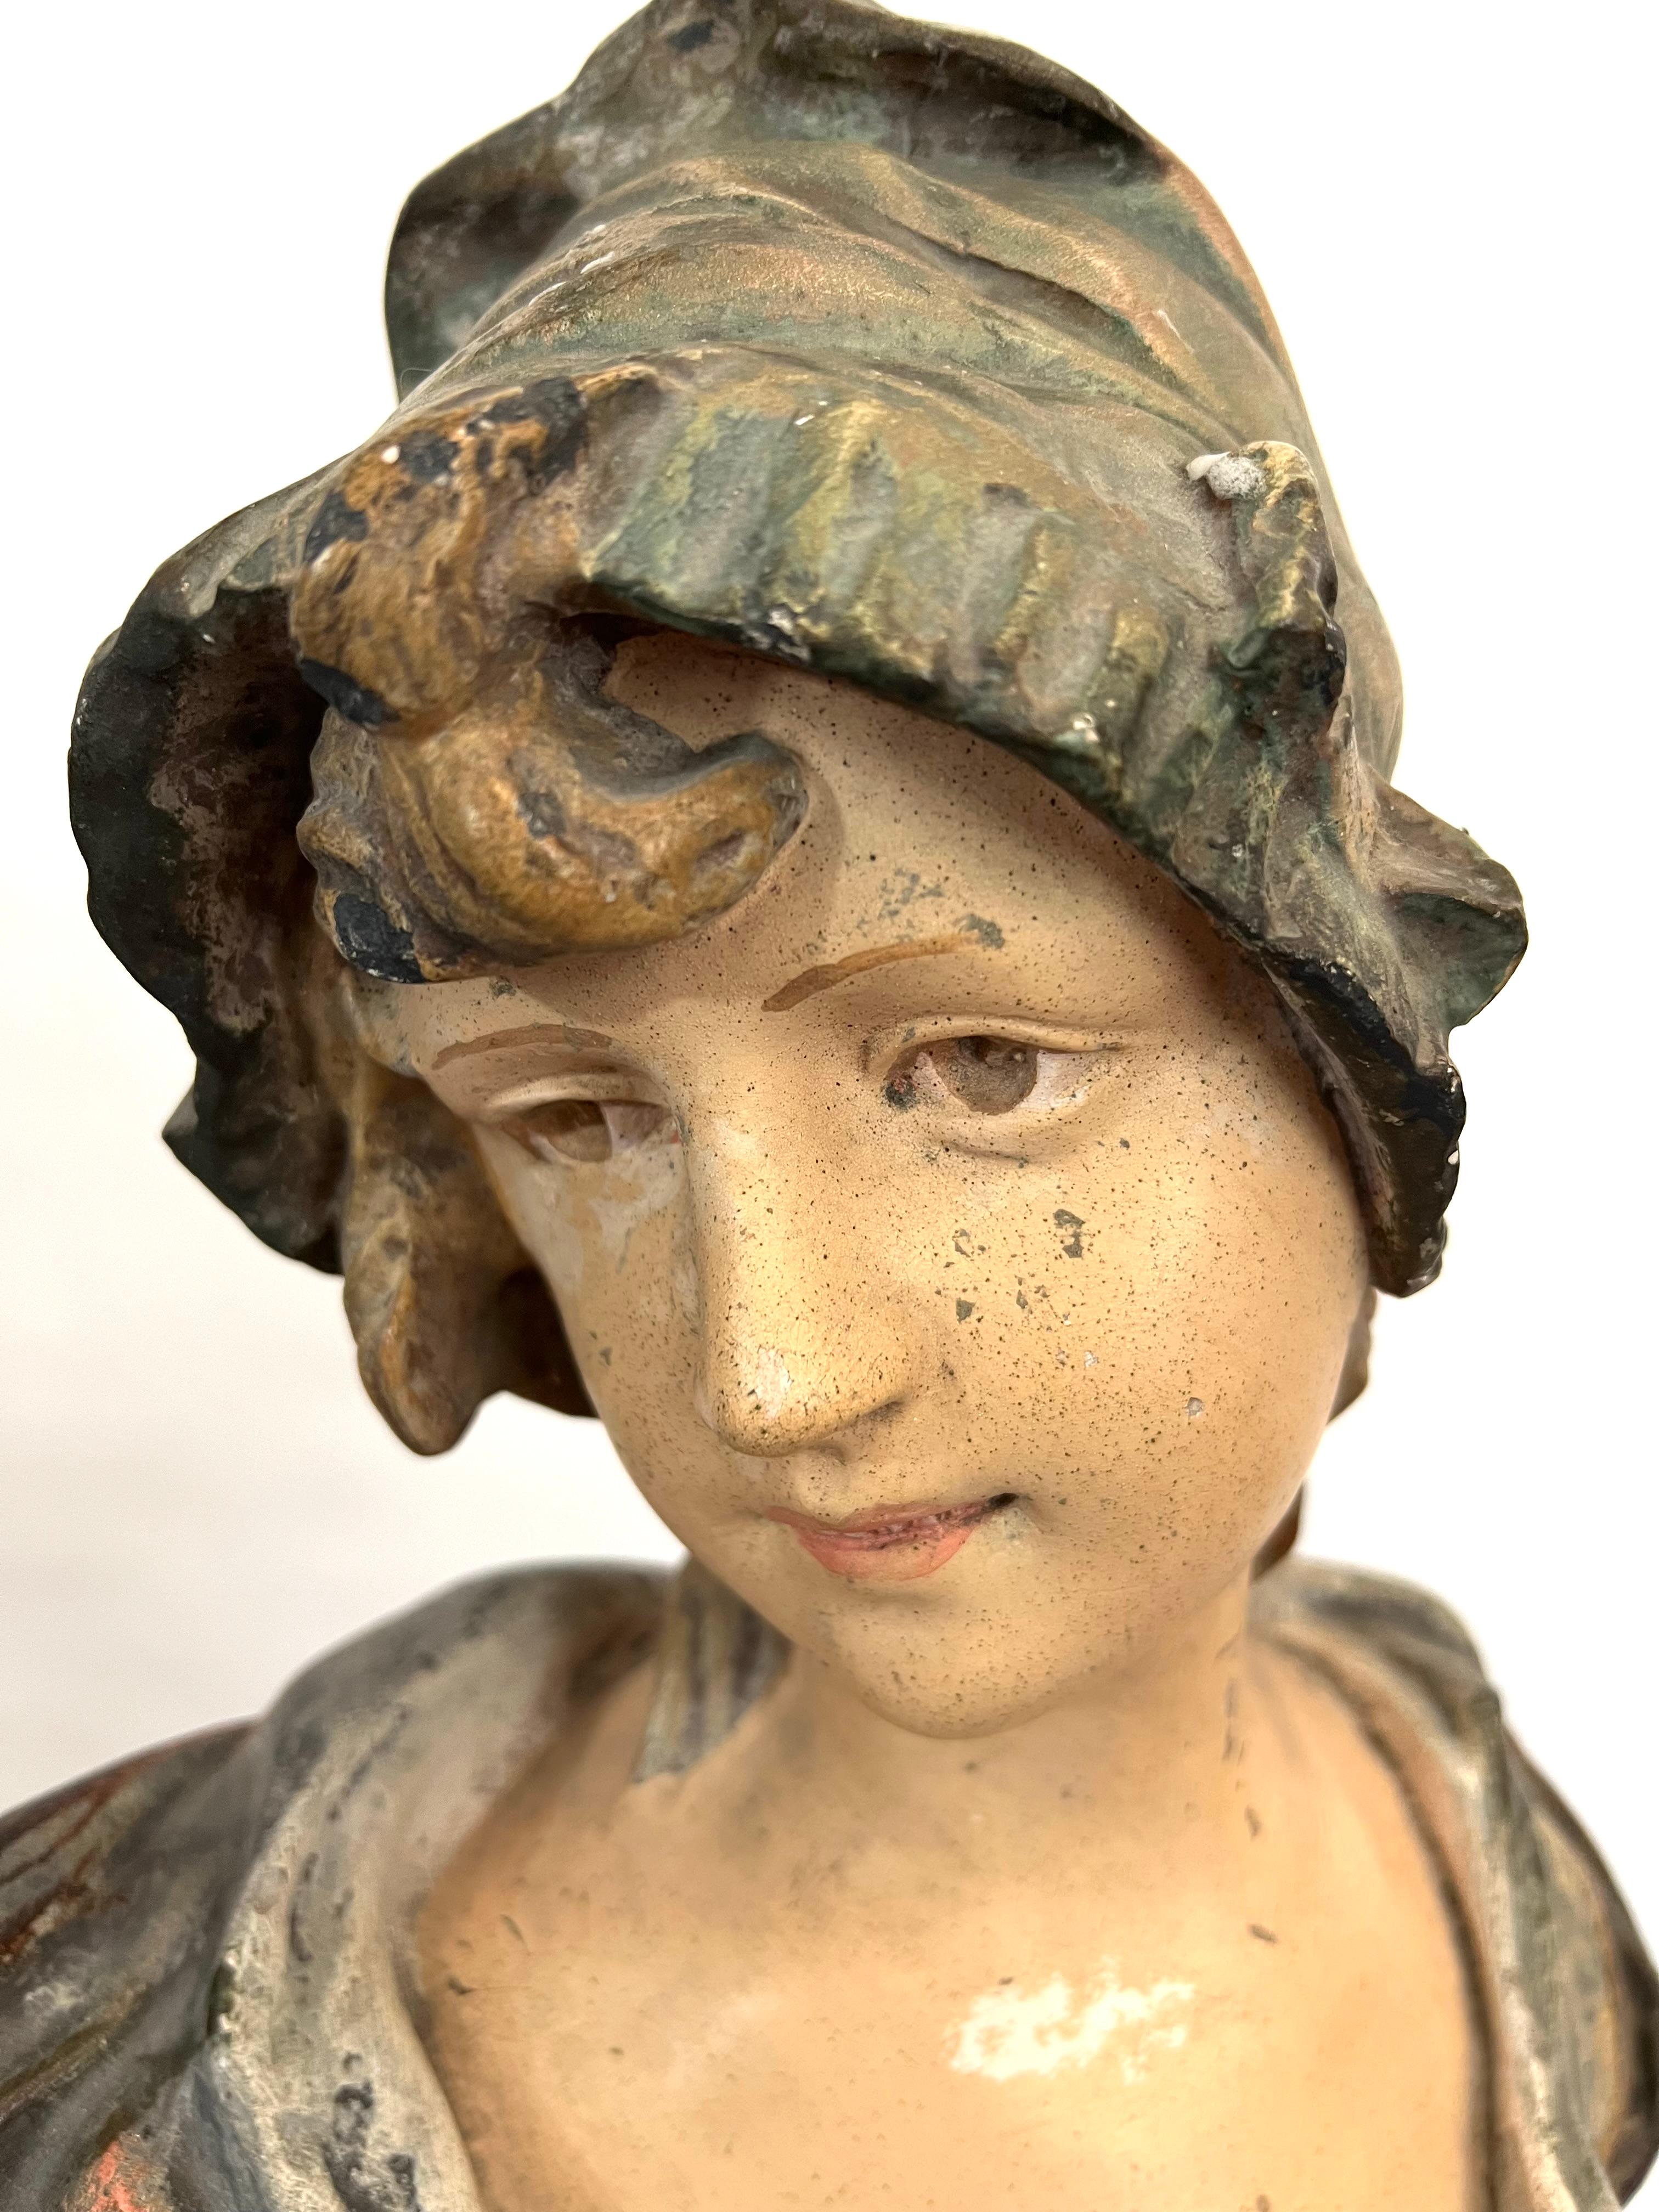 Superbe et rare sculpture en plâtre polychrome représentant le buste d'une jeune femme portant une robe à nœuds et un chapeau.
Le buste est signé sur le côté mais la signature est difficile à lire.
Période : début 1900

Le buste de cette femme est